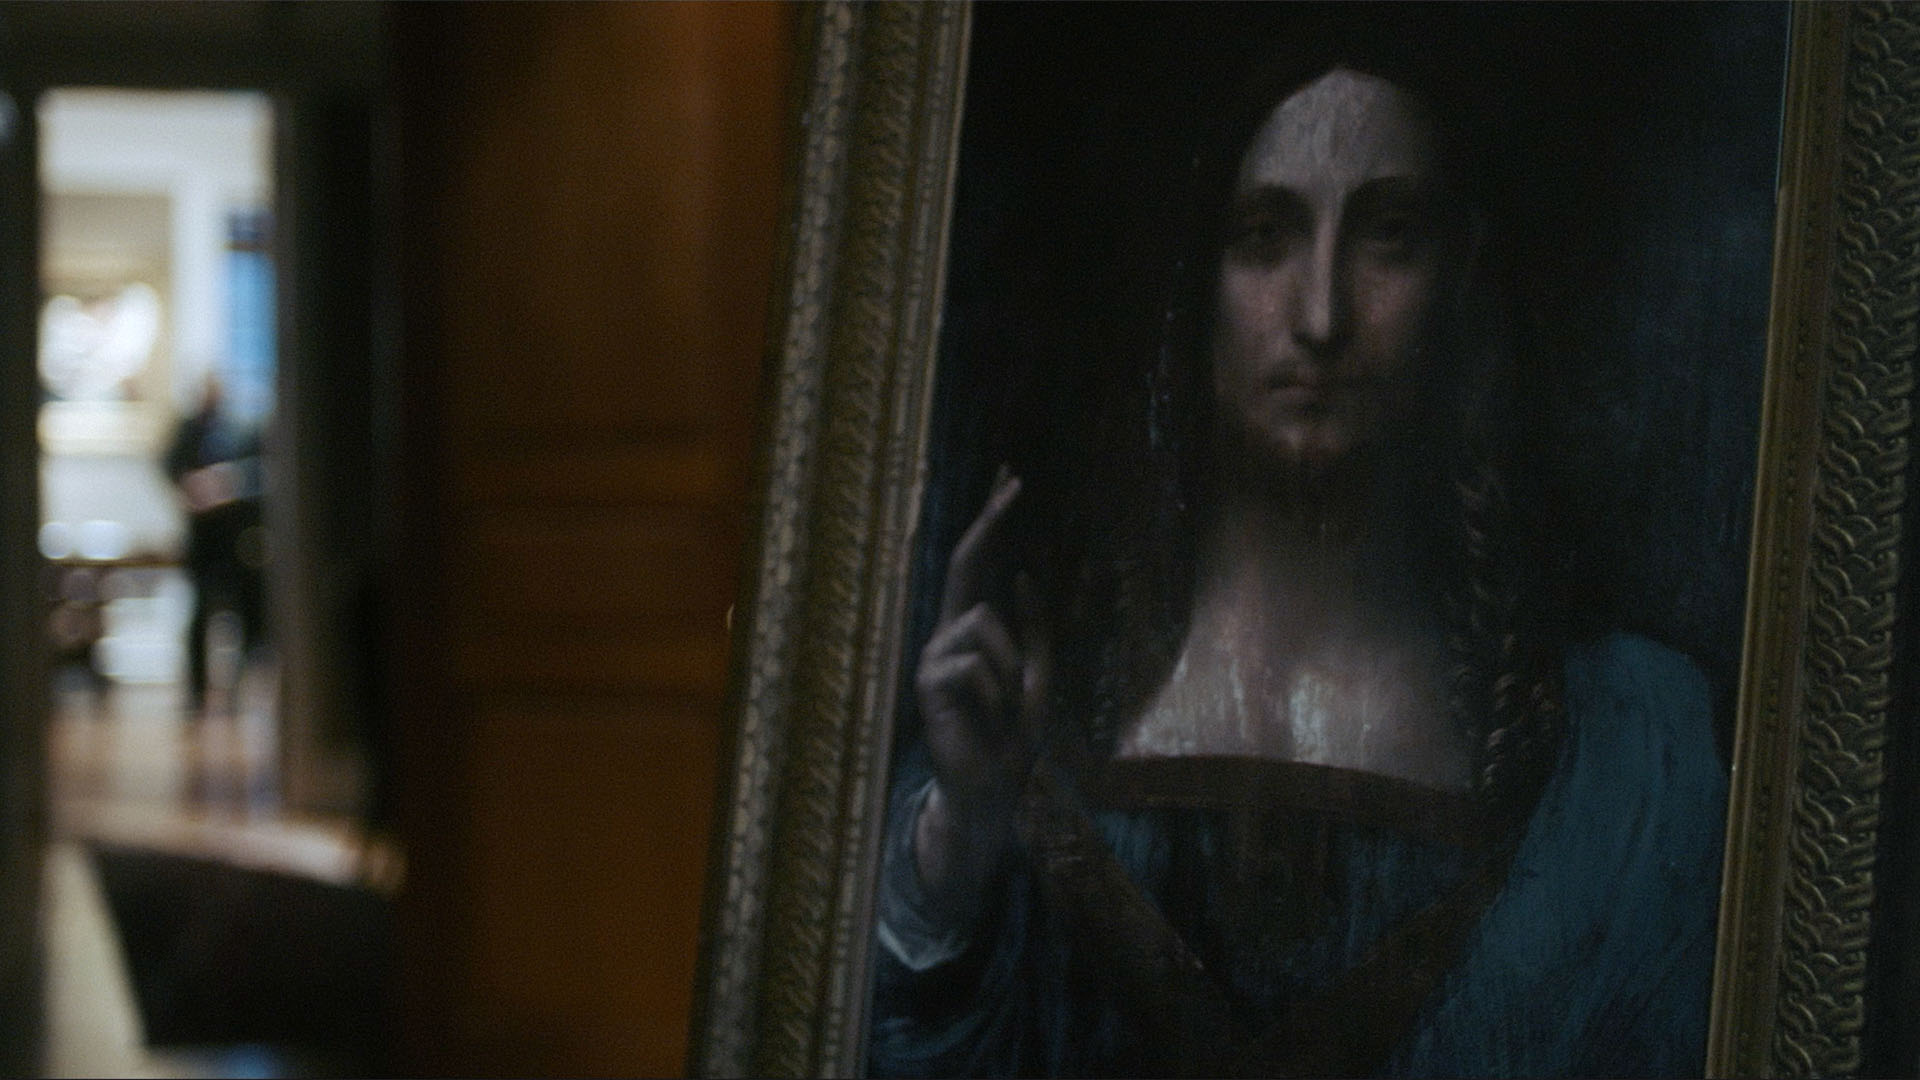 Trailer still frame from The Lost Leonardo, painting